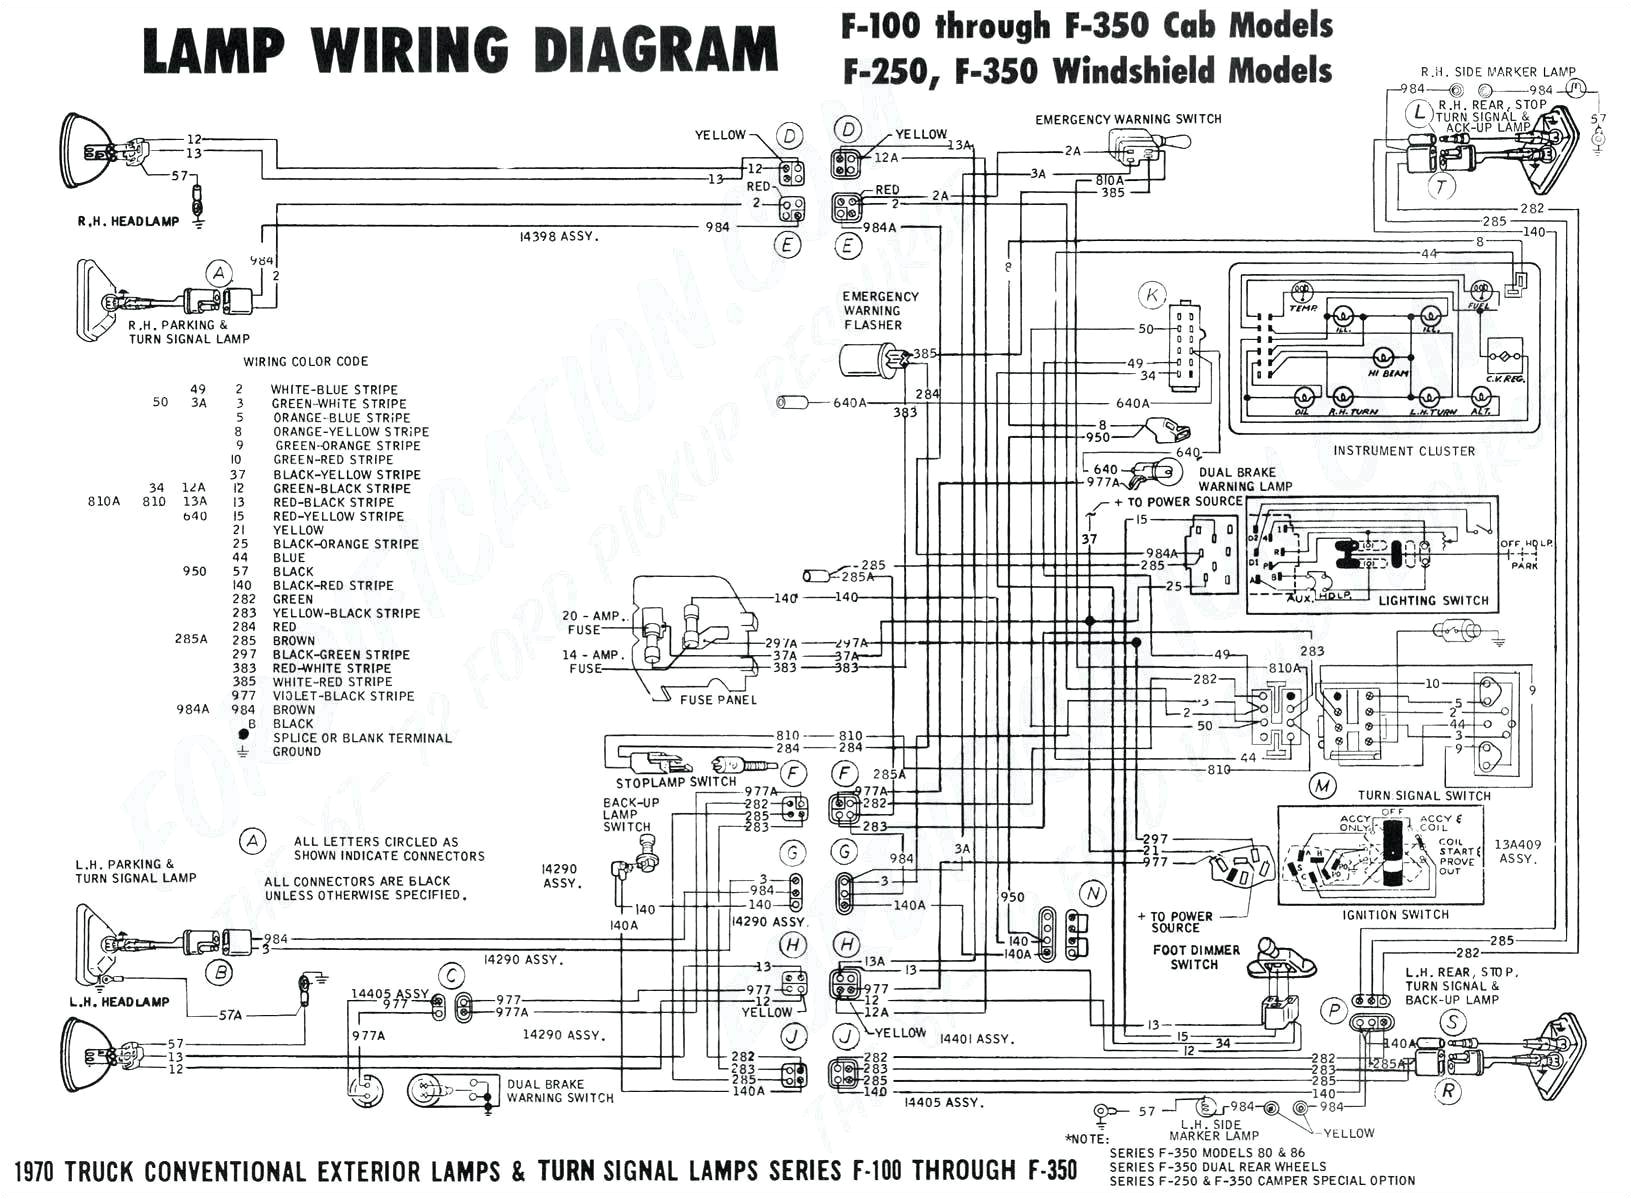 fuse line diagram wiring diagram